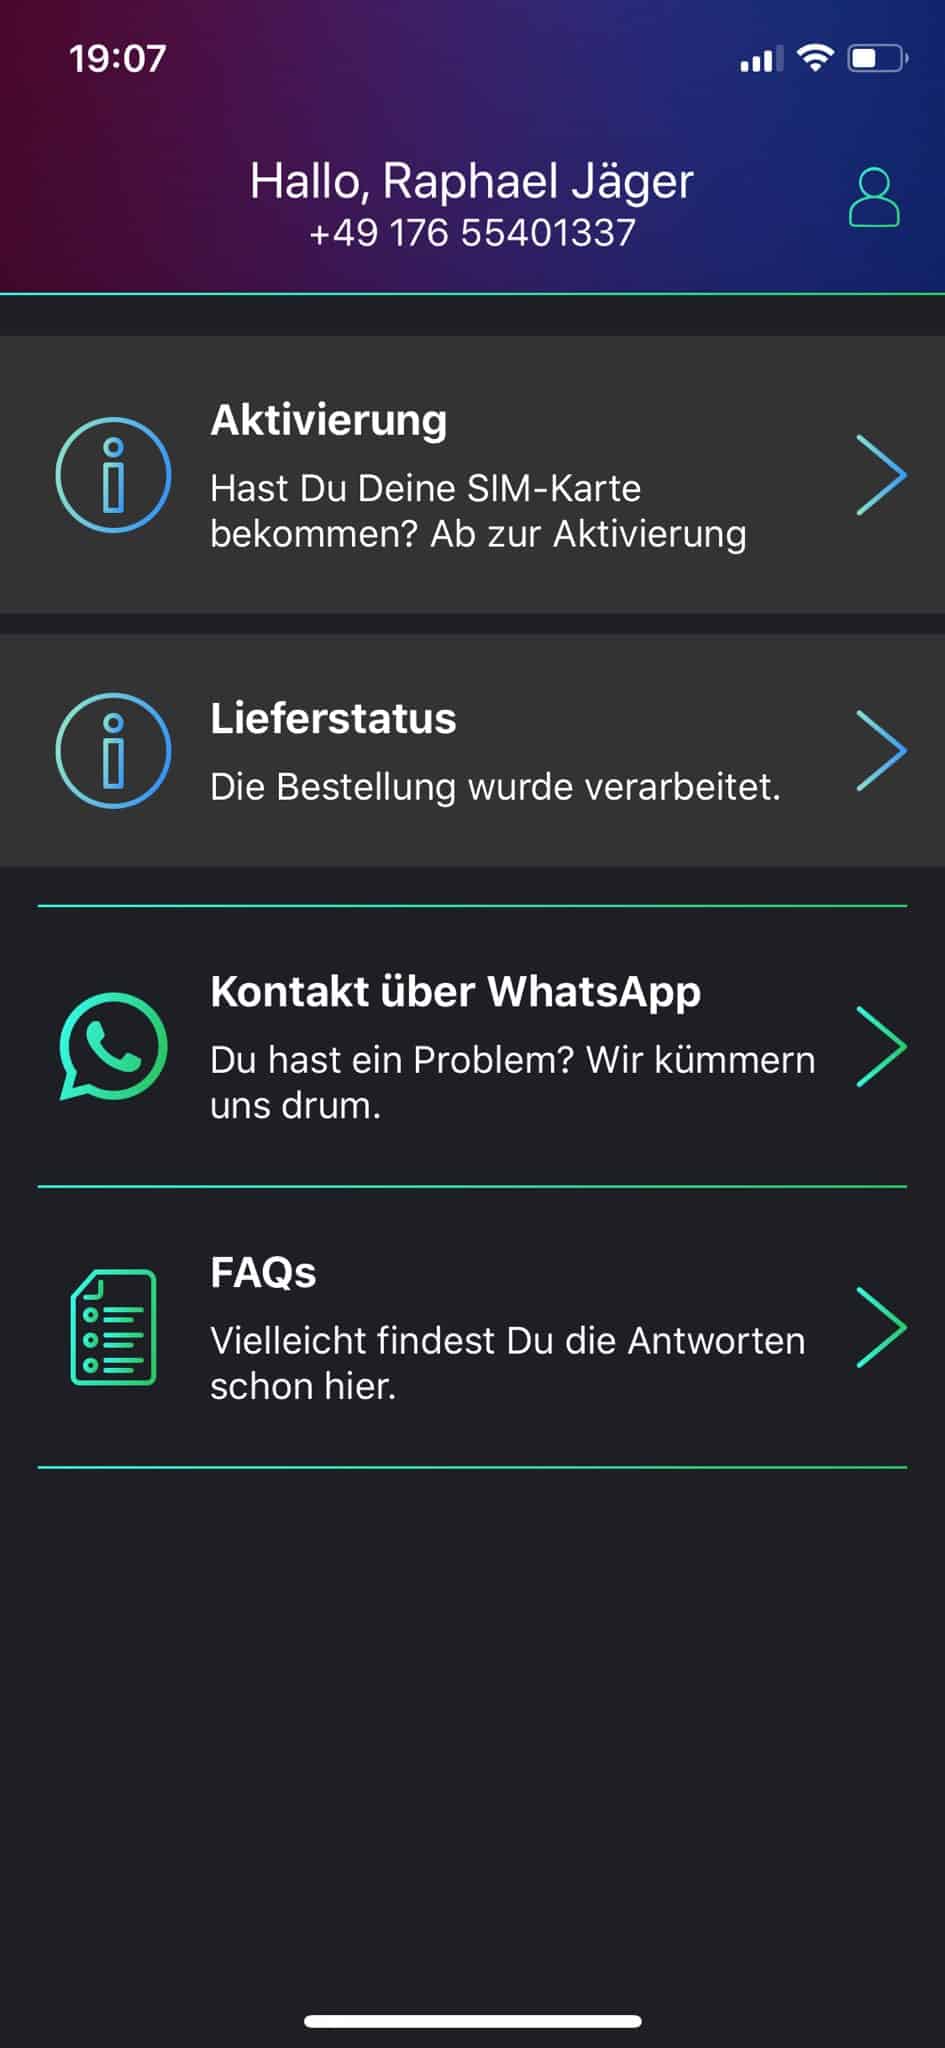 freenet FUNK - Smartphone-App - Übersicht - Aktivierung - Lieferstatus